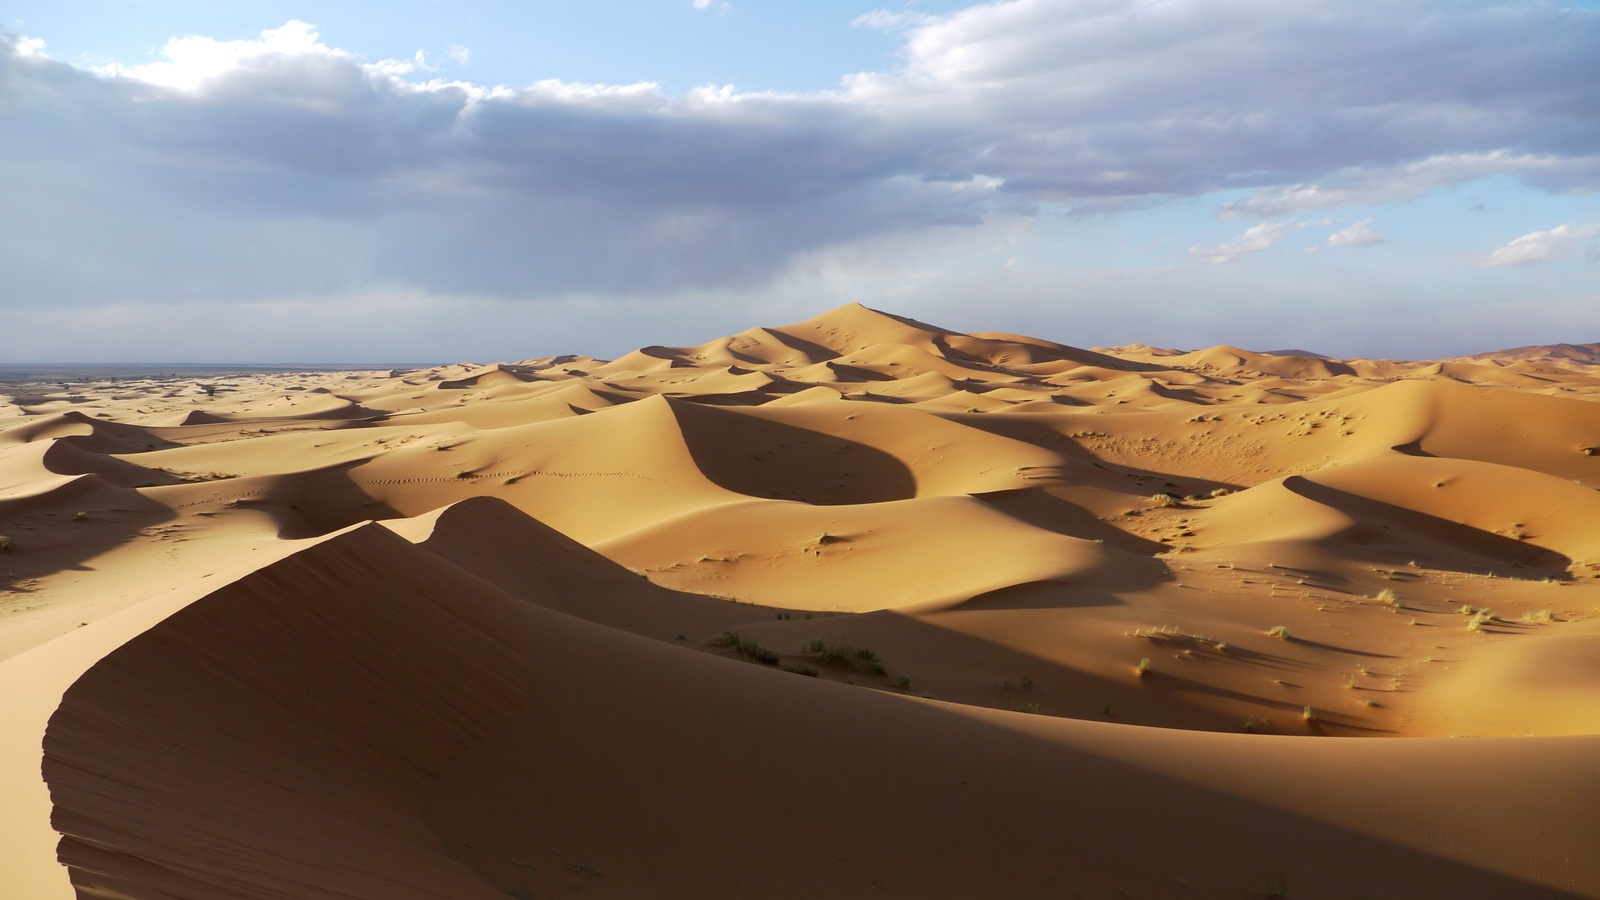 Sivatagi tájkép